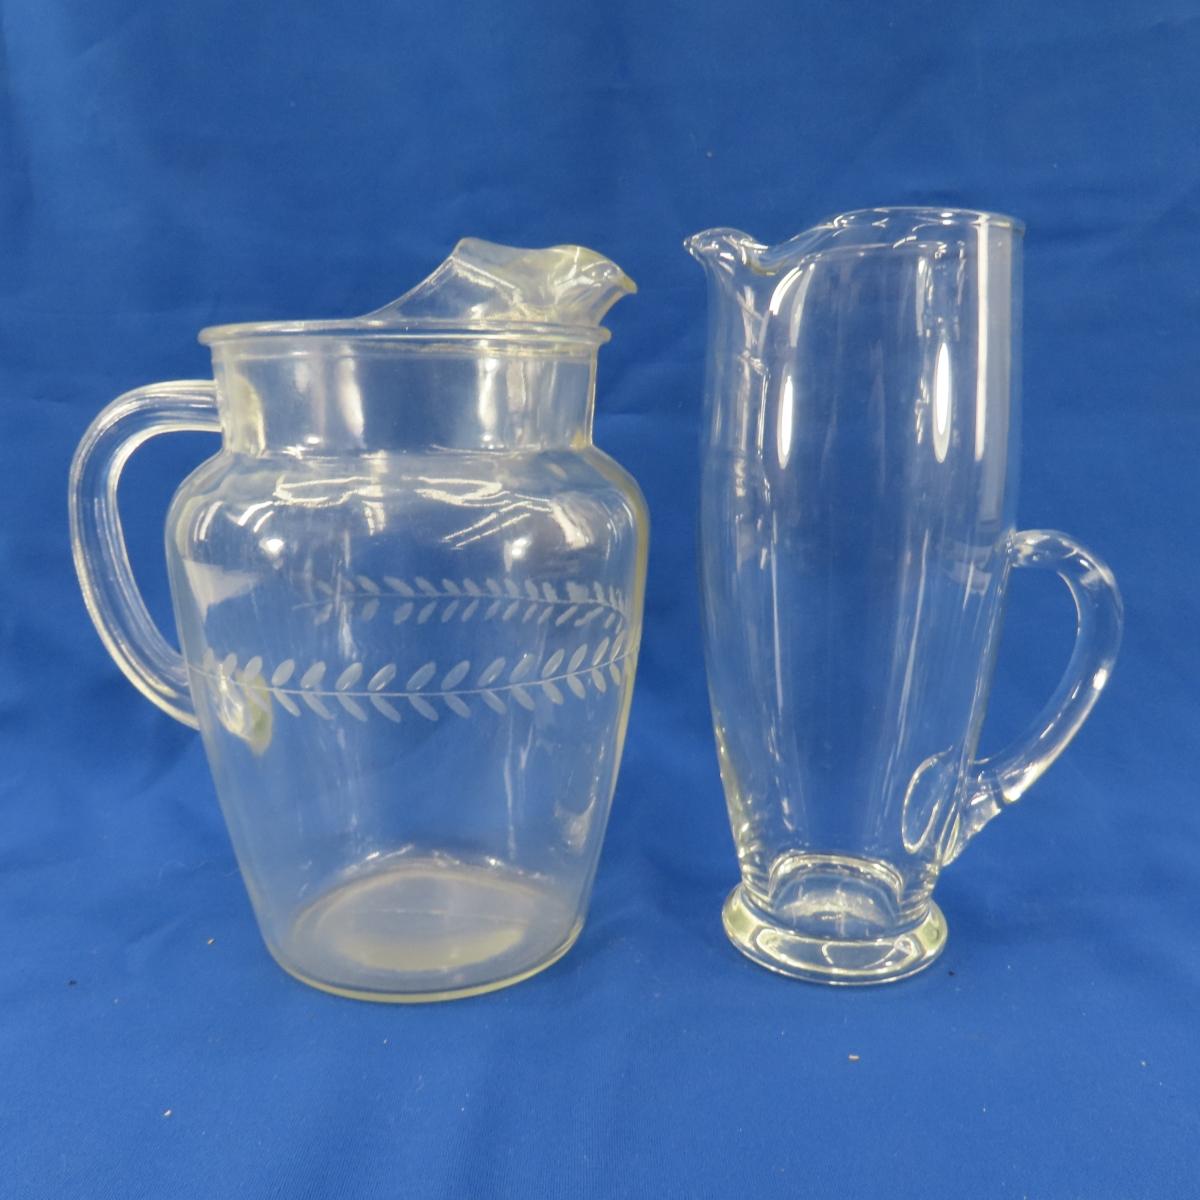 Vintage & Antique Glassware- Pitchers